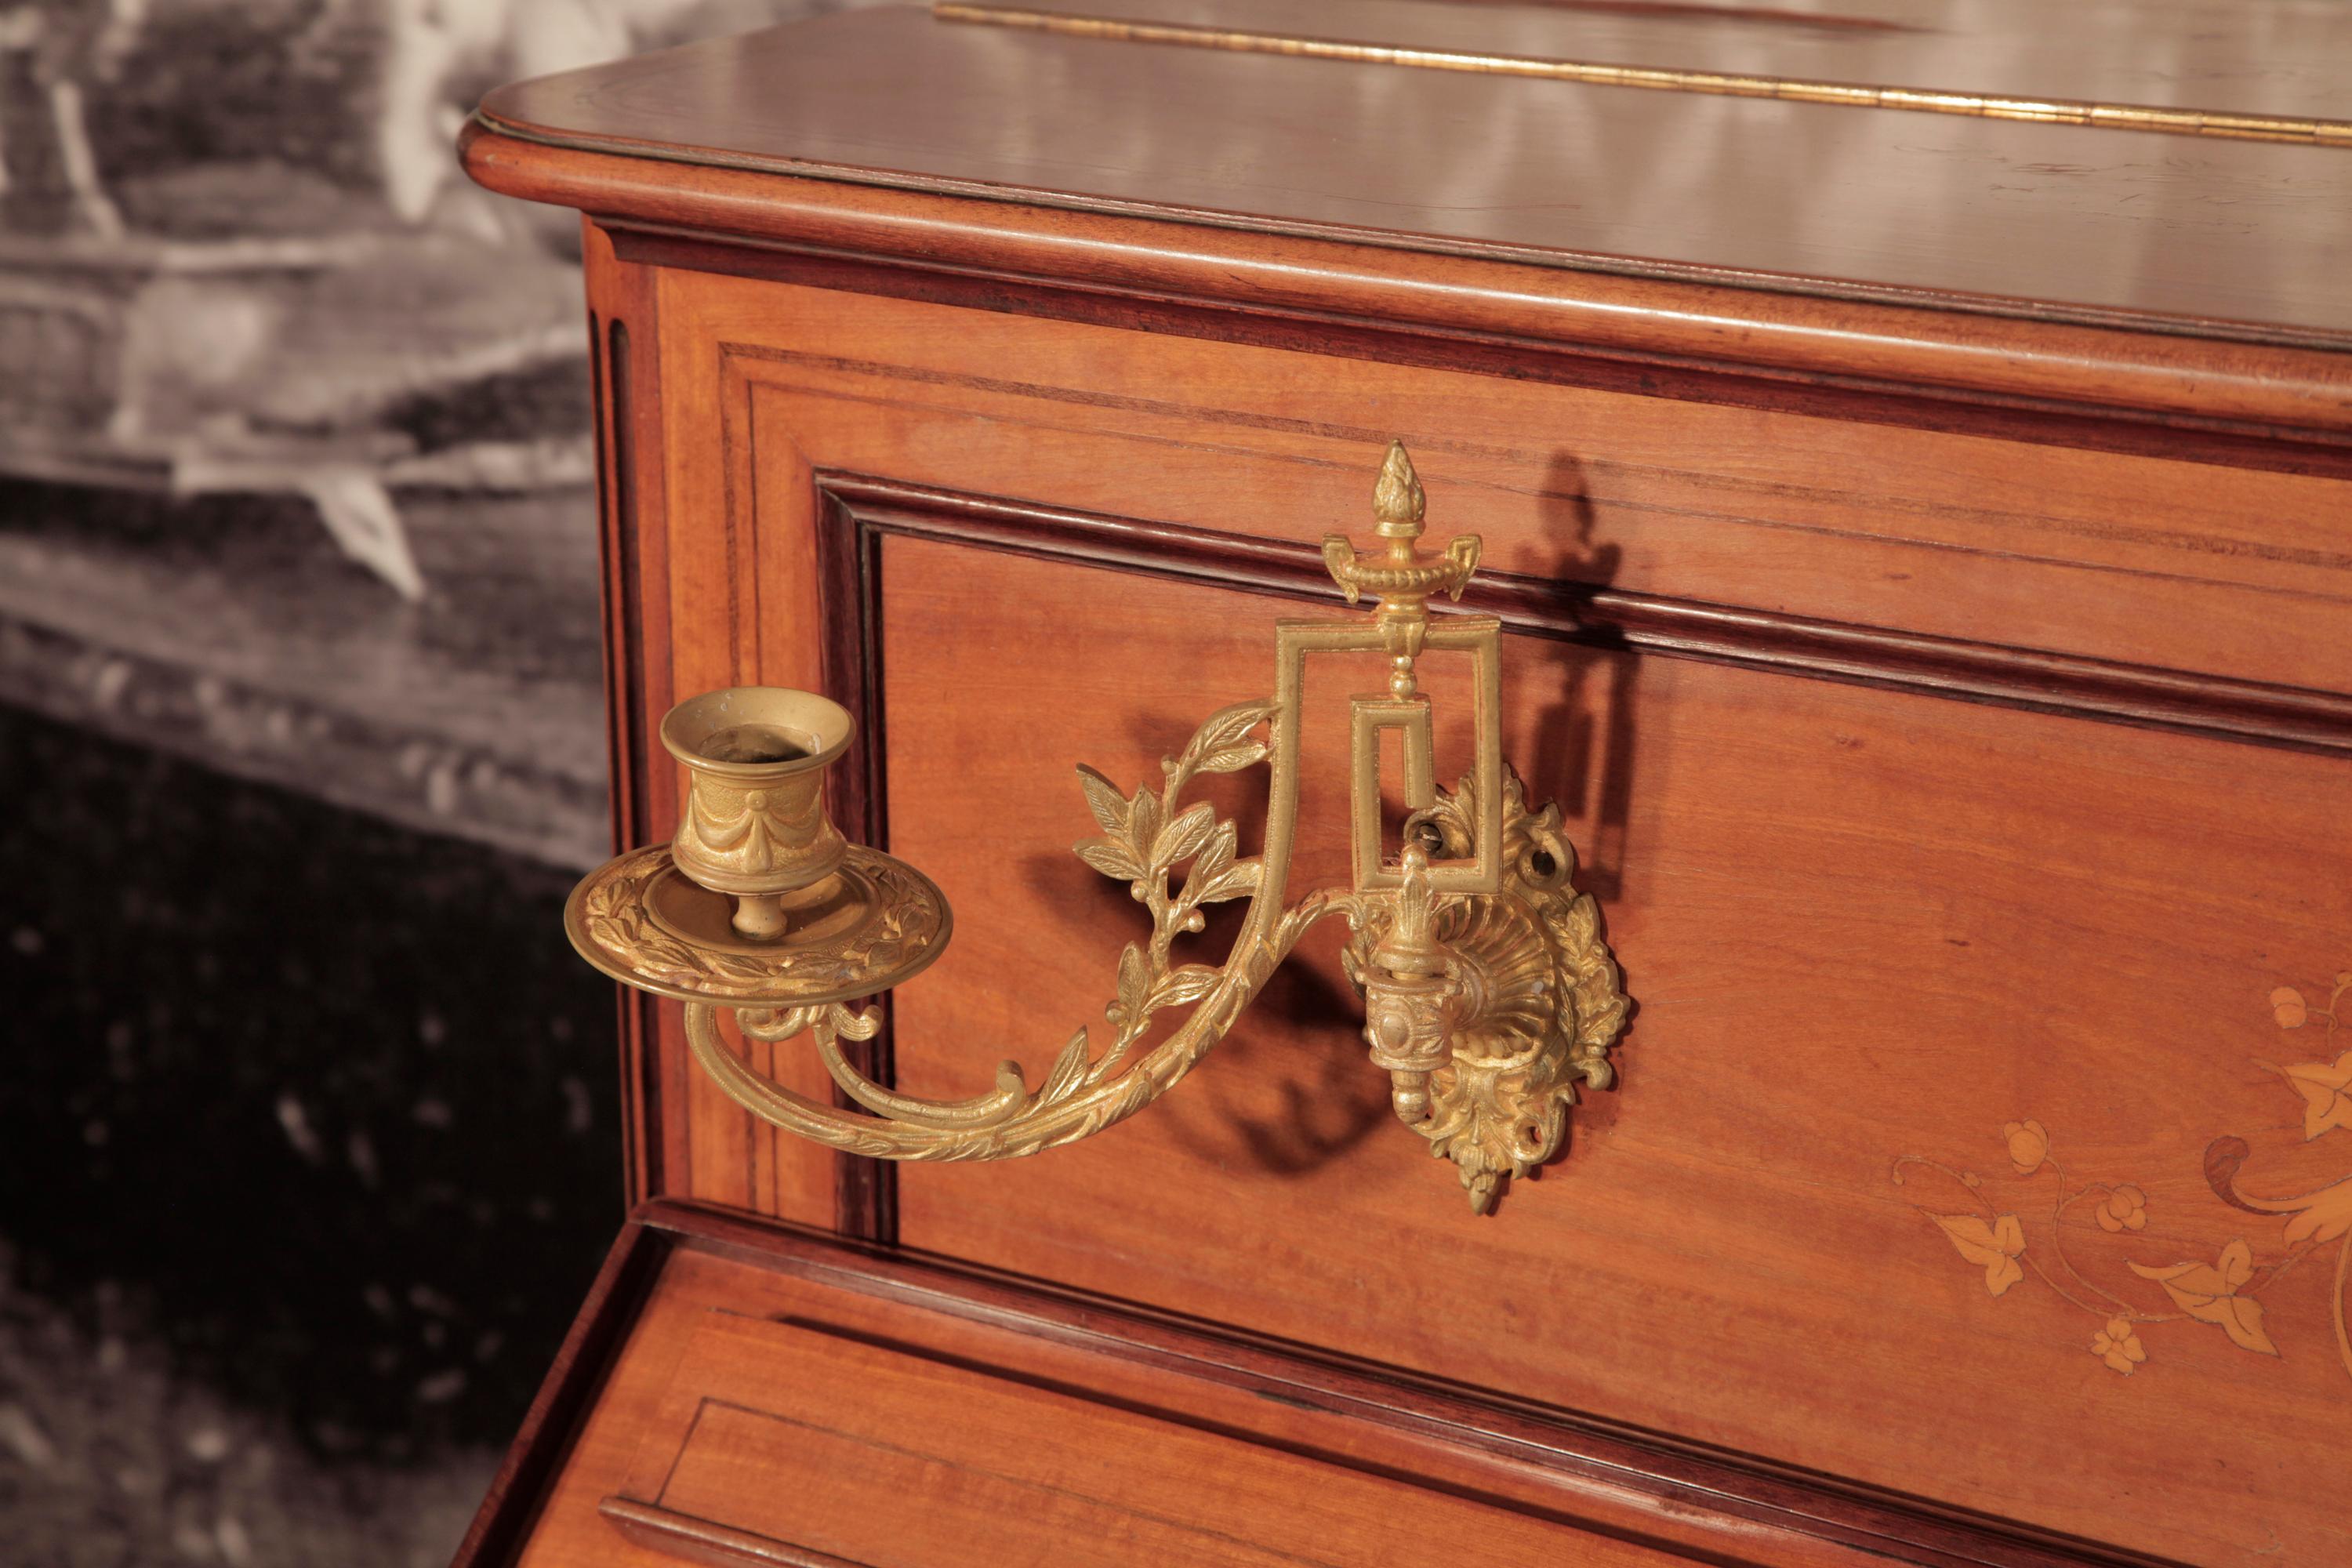 Ein Pleyel-Klavier aus dem Jahr 1893 mit einem Gehäuse aus satiniertem Holz.
Das gesamte Gehäuse ist mit komplizierten Intarsien im neoklassischen Stil versehen. Die Frontpaneele weisen ein symmetrisches Muster aus Akanthusranken, Blumen,